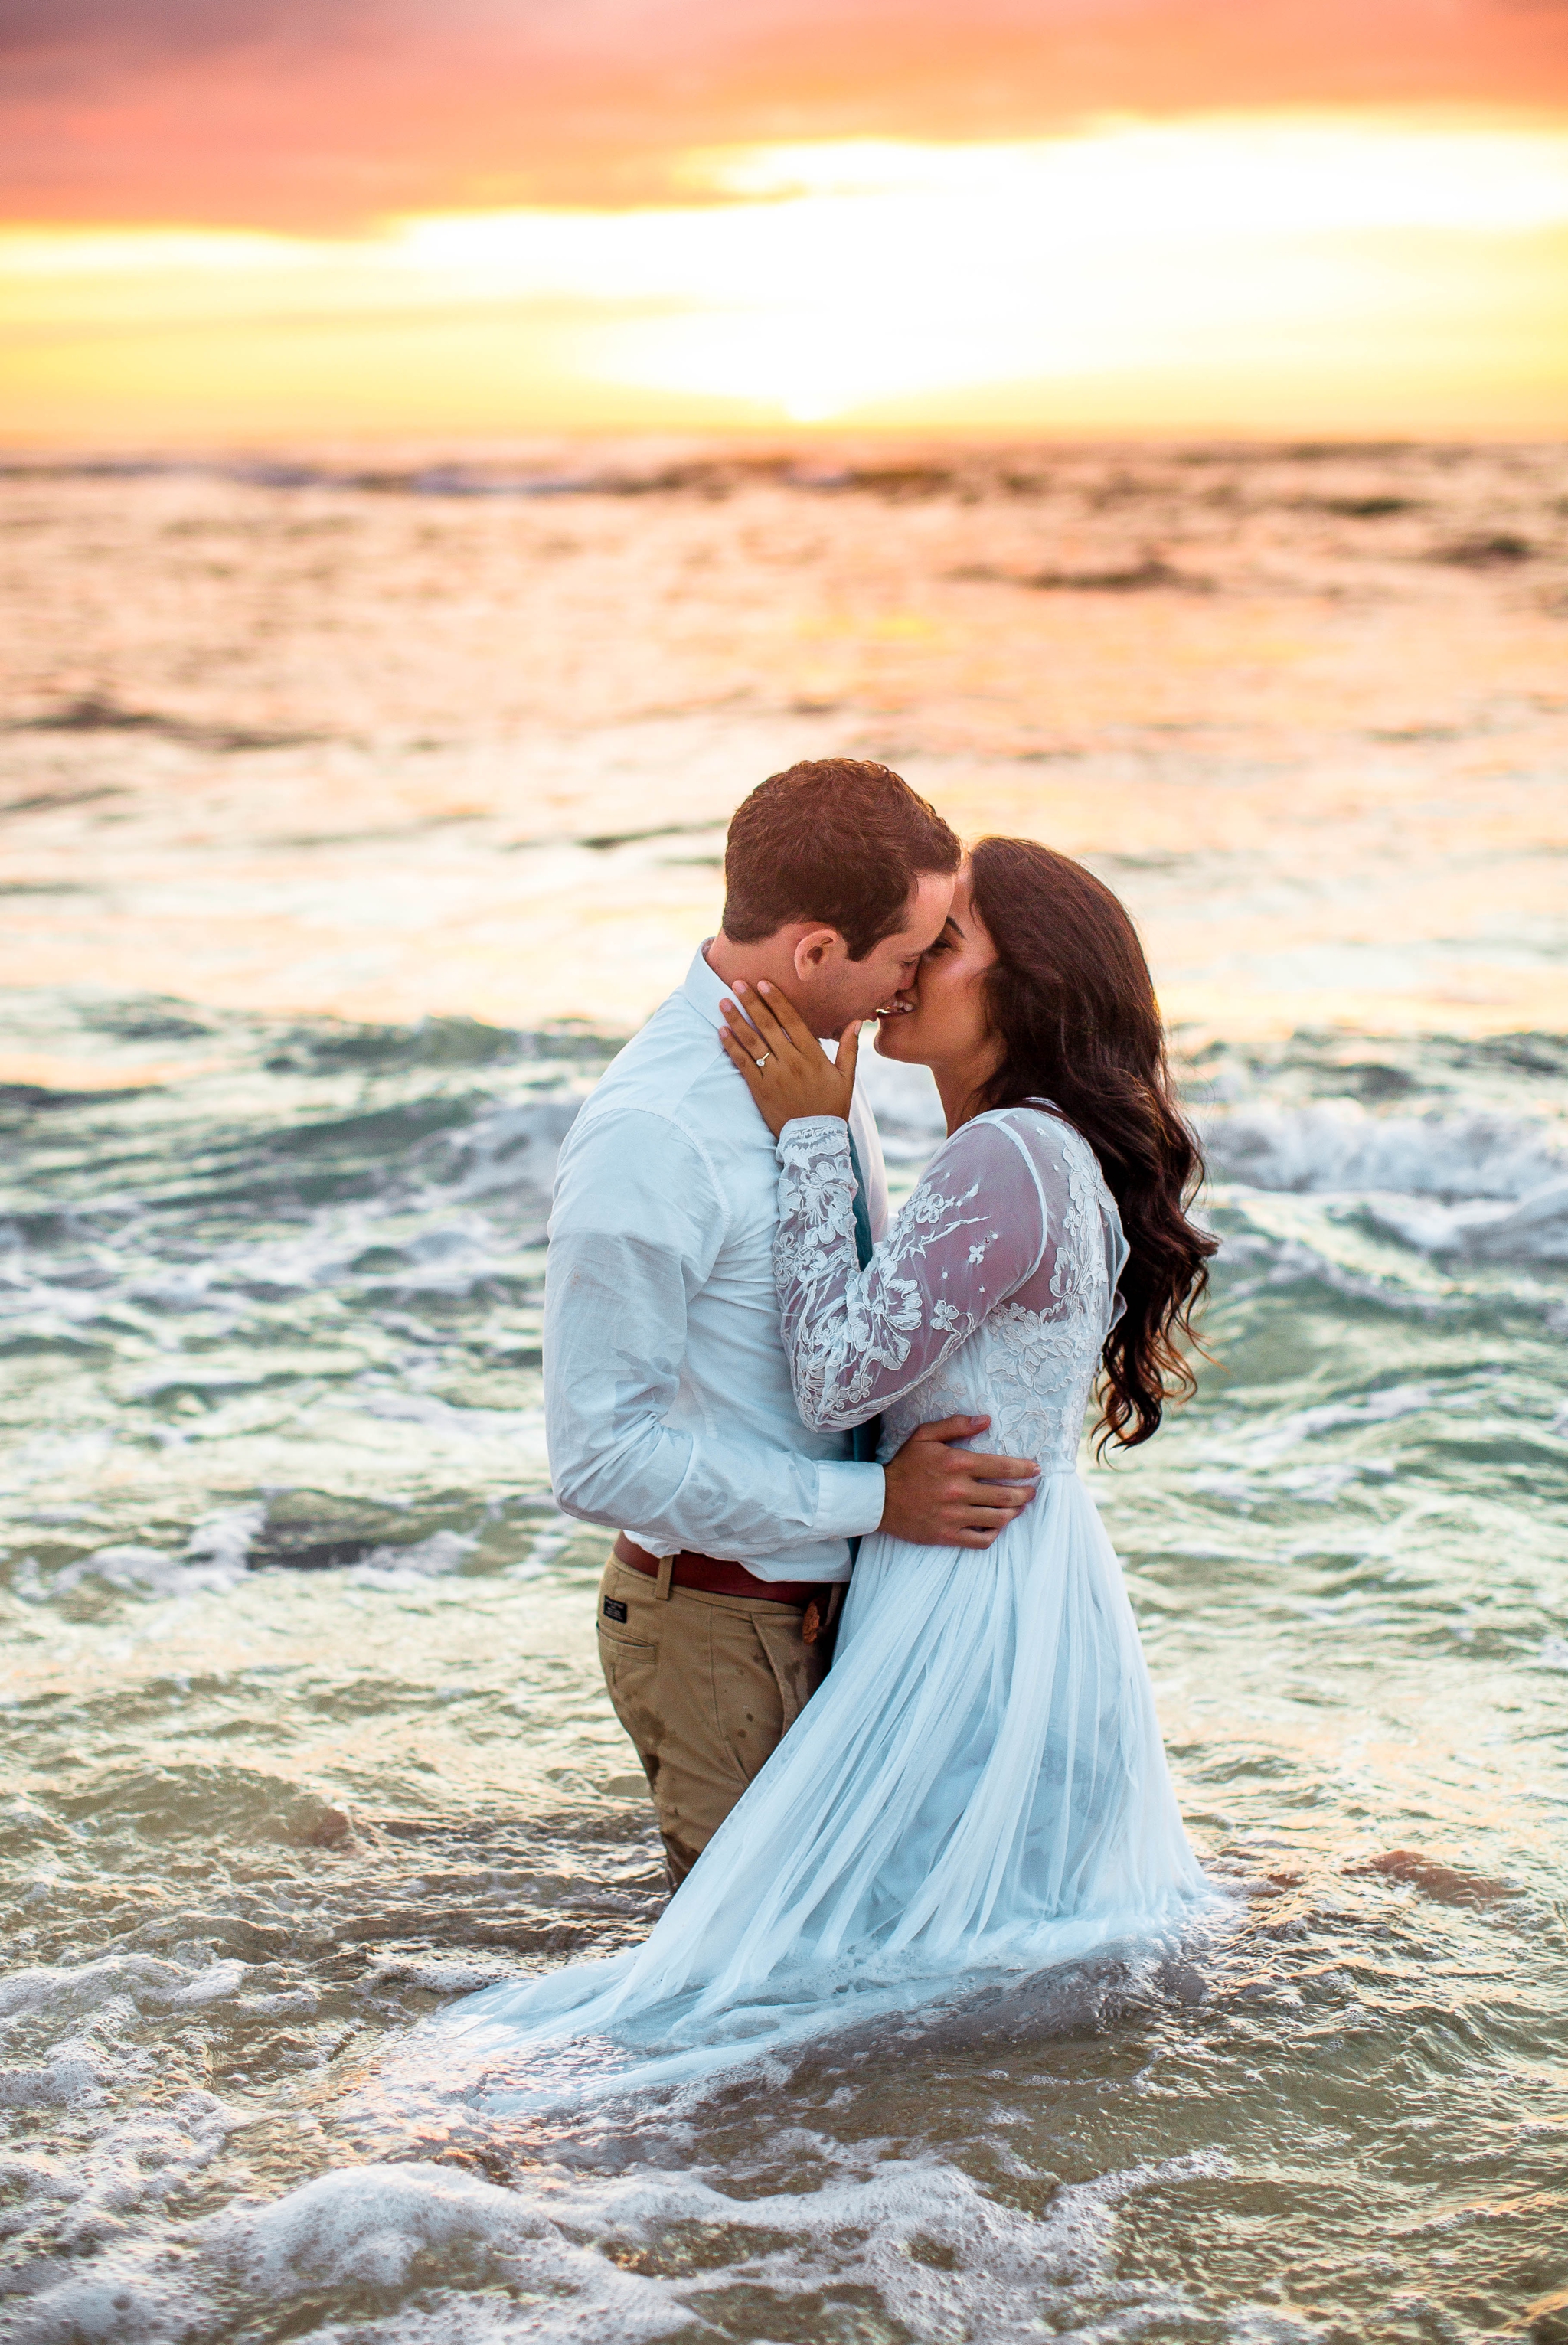  Bride and Groom in the ocean - Wedding Portraits at Sunset in Hawaii - Ana + Elijah - Wedding at Loulu Palm in Haleiwa, HI - Oahu Hawaii Wedding Photographer - #hawaiiweddingphotographer #oahuweddings #hawaiiweddings 